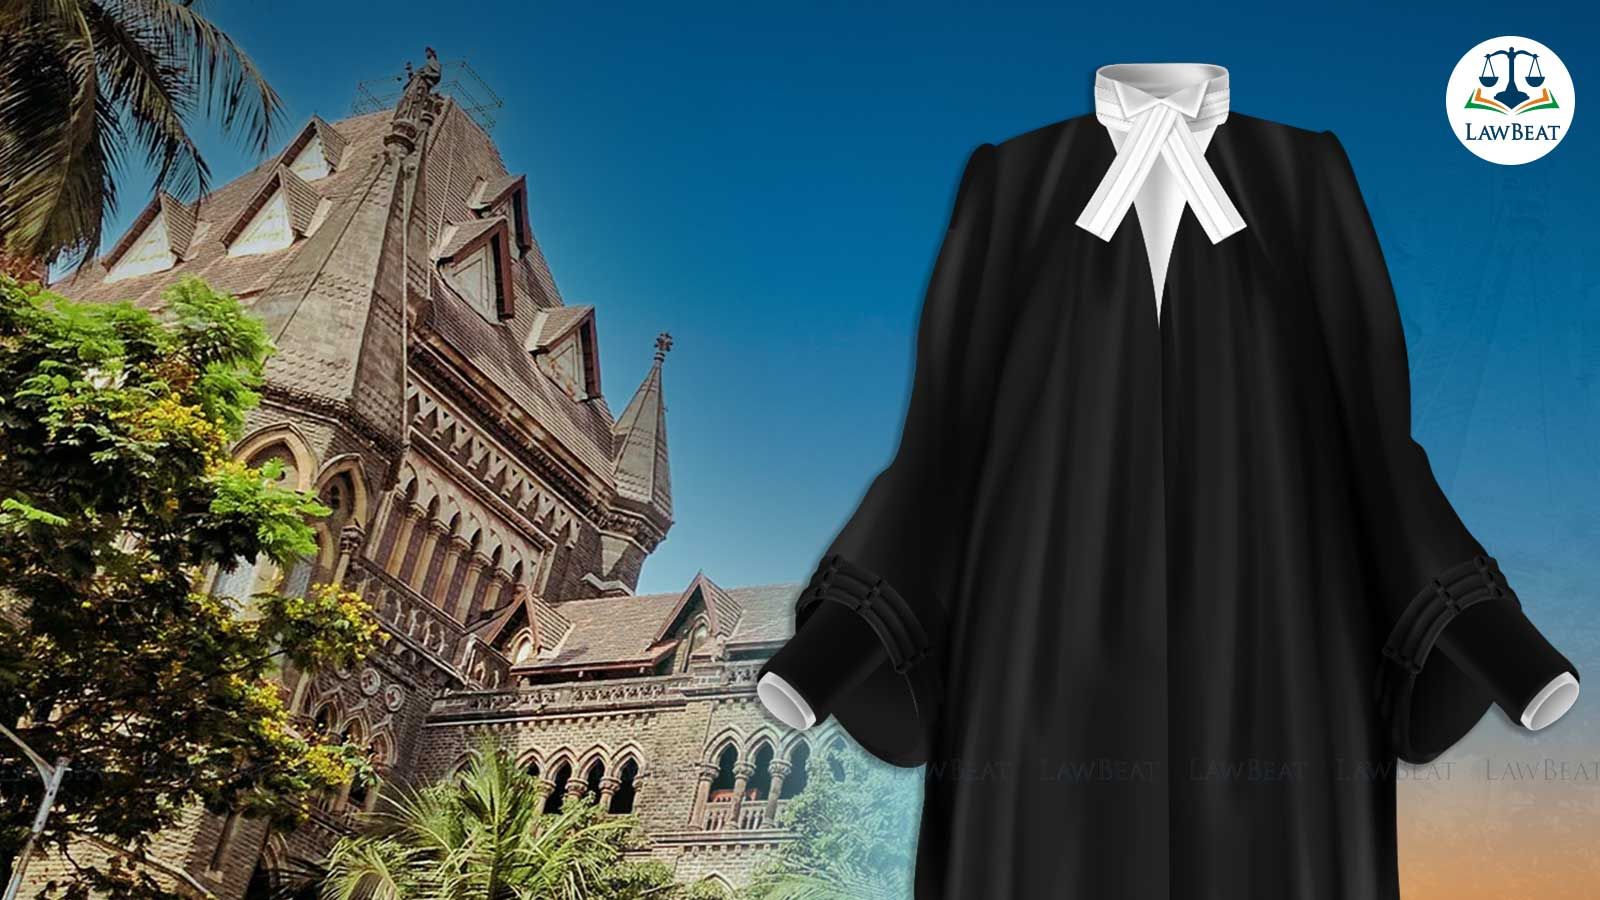 Dsom Lawyer Gown Solid Men Suit - Buy Dsom Lawyer Gown Solid Men Suit  Online at Best Prices in India | Flipkart.com